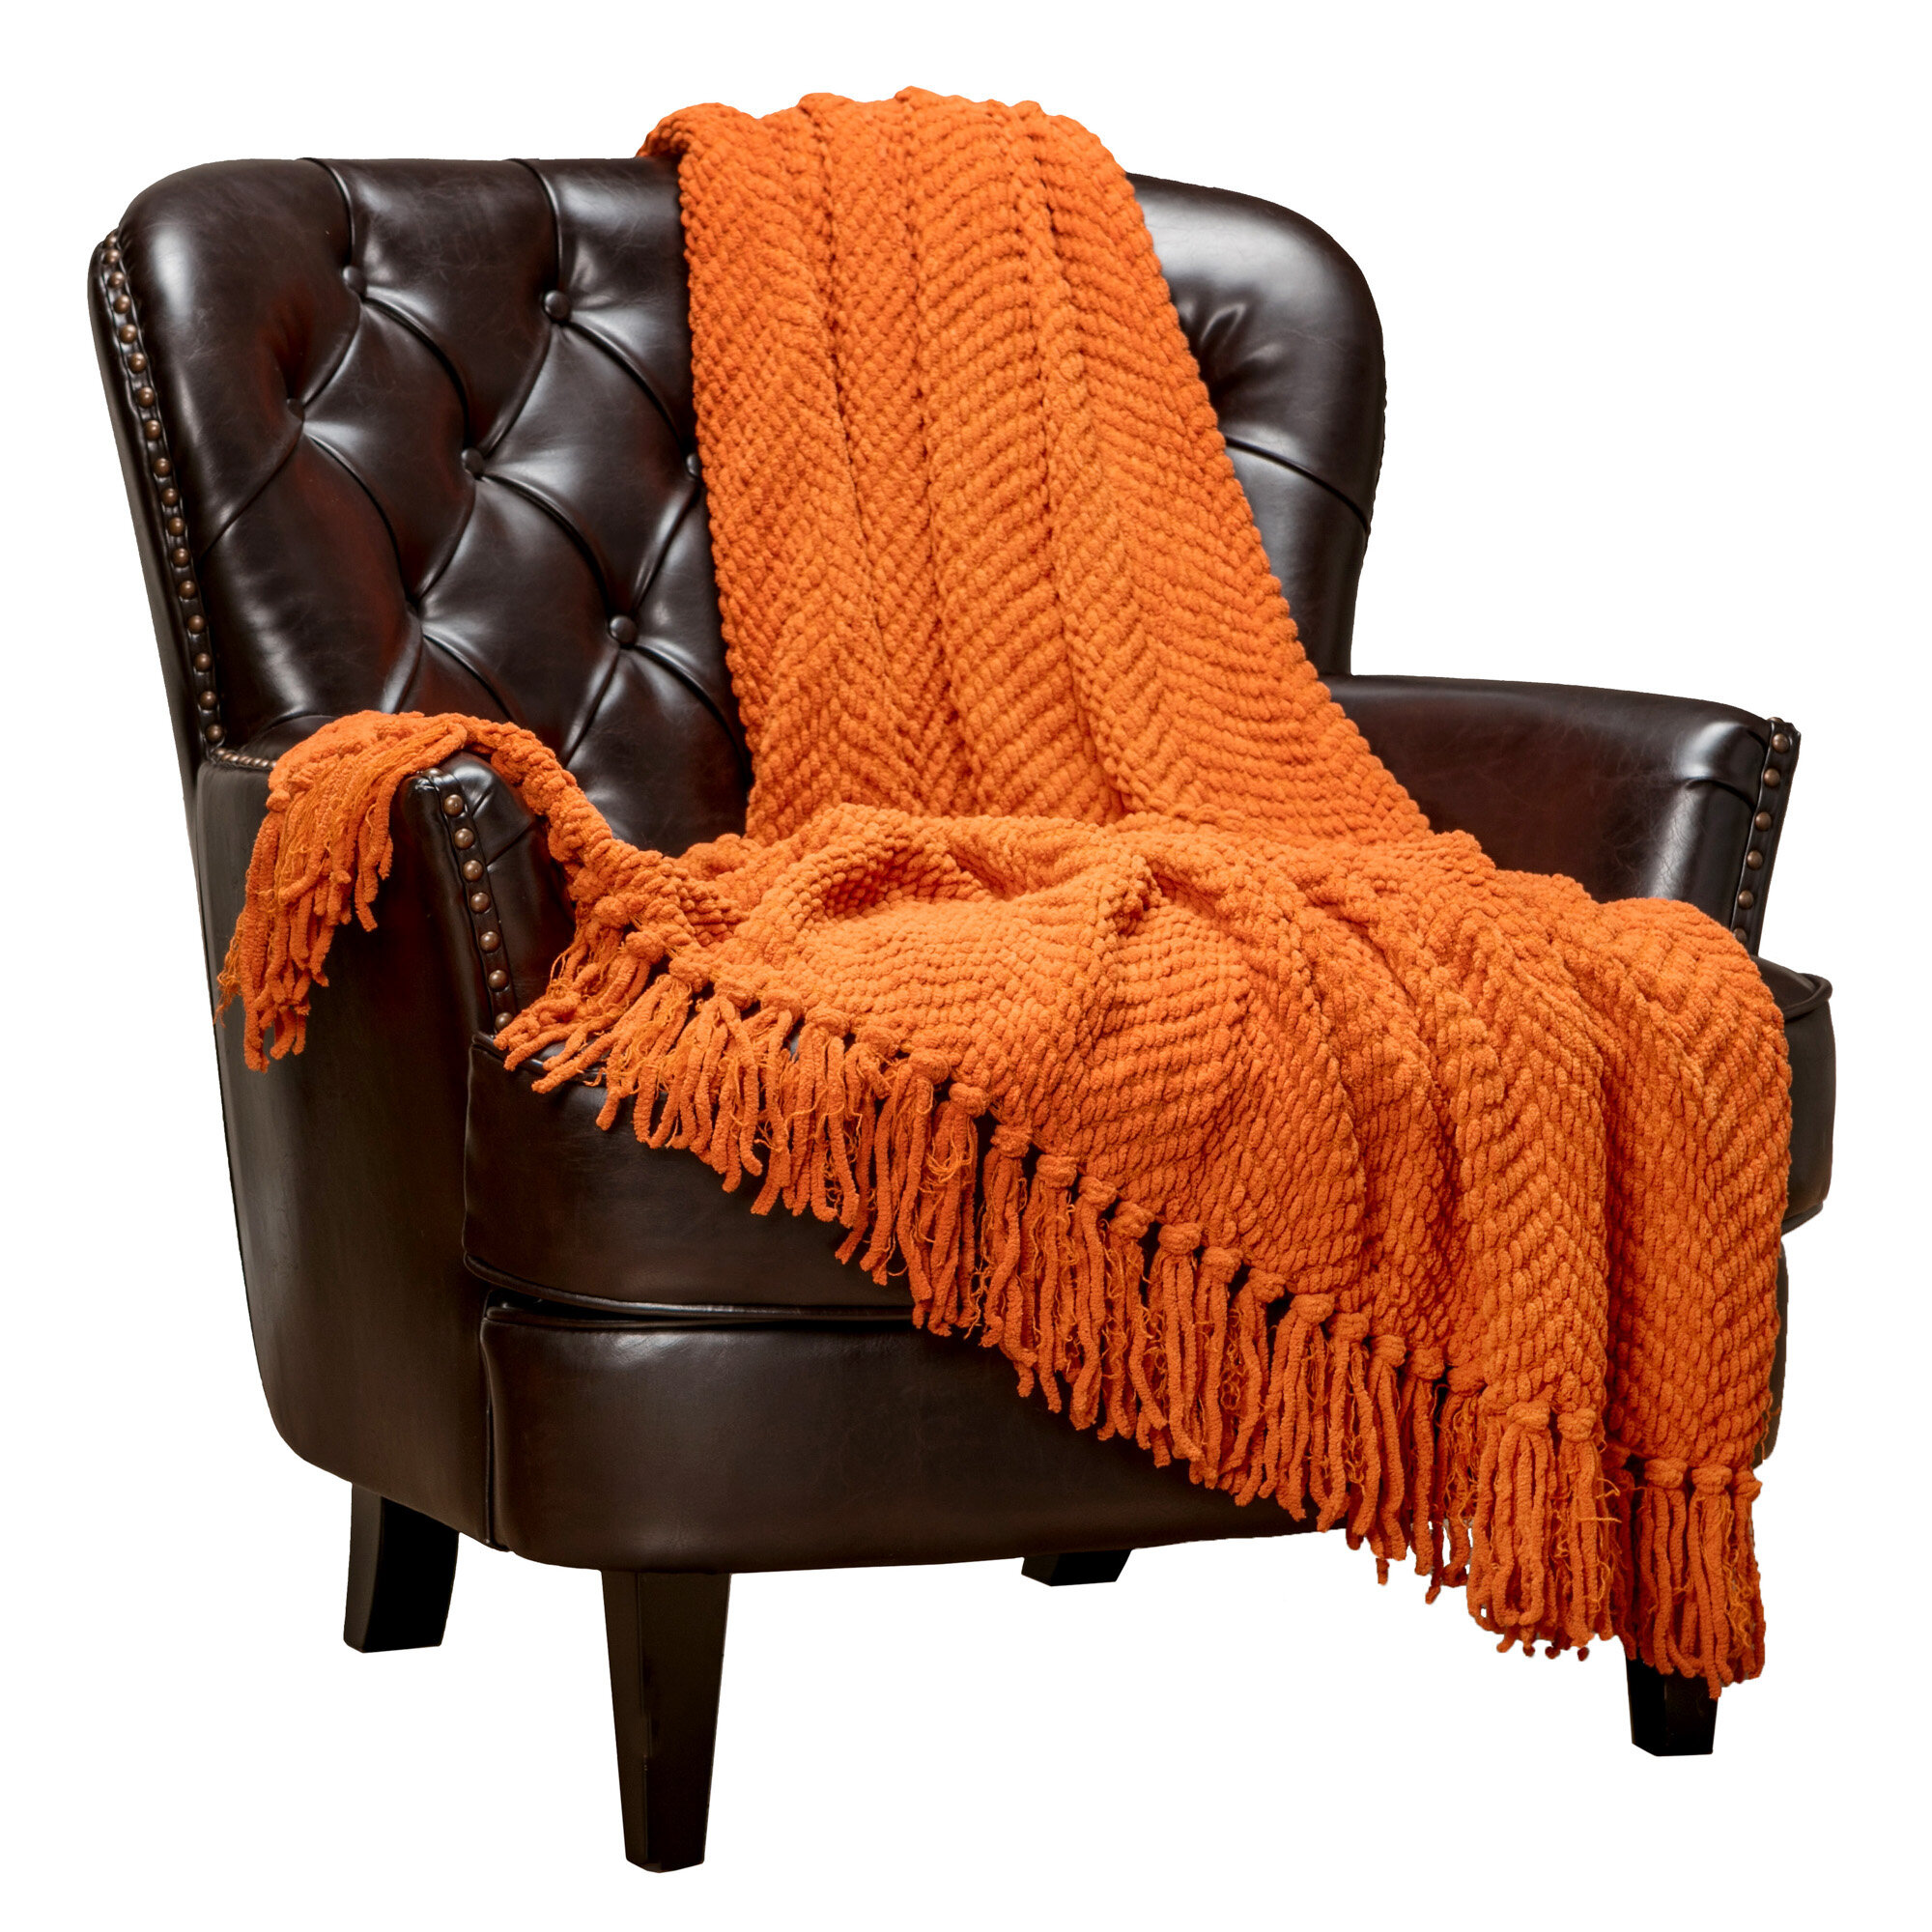 orange throw blanket and pillows